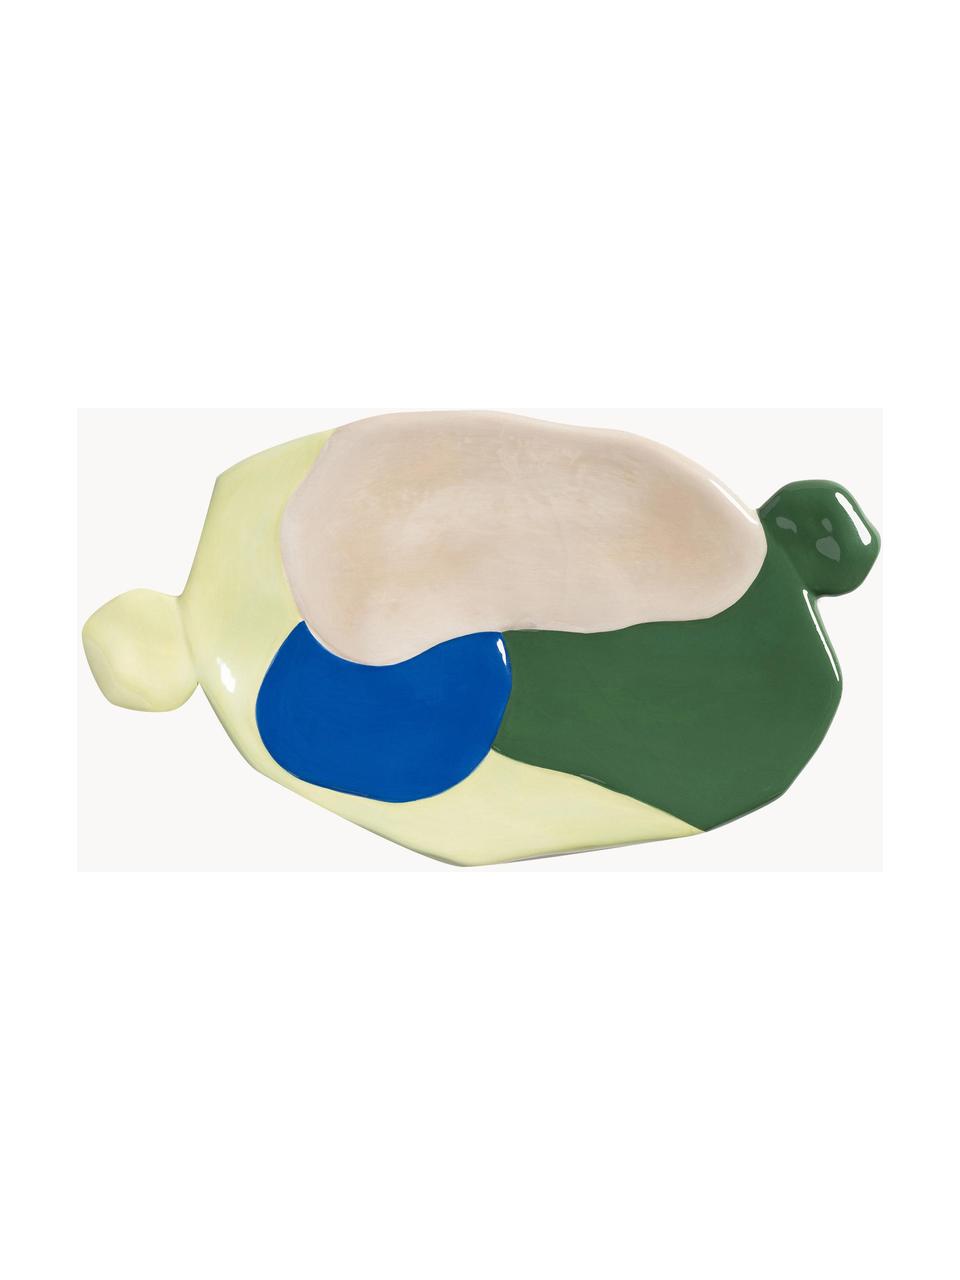 Ručně malovaný porcelánový servírovací talíř Chunky, 24 x 14 cm, Porcelán, Žlutá, modrá, zelená, béžová, Š 24 cm, H 14 cm